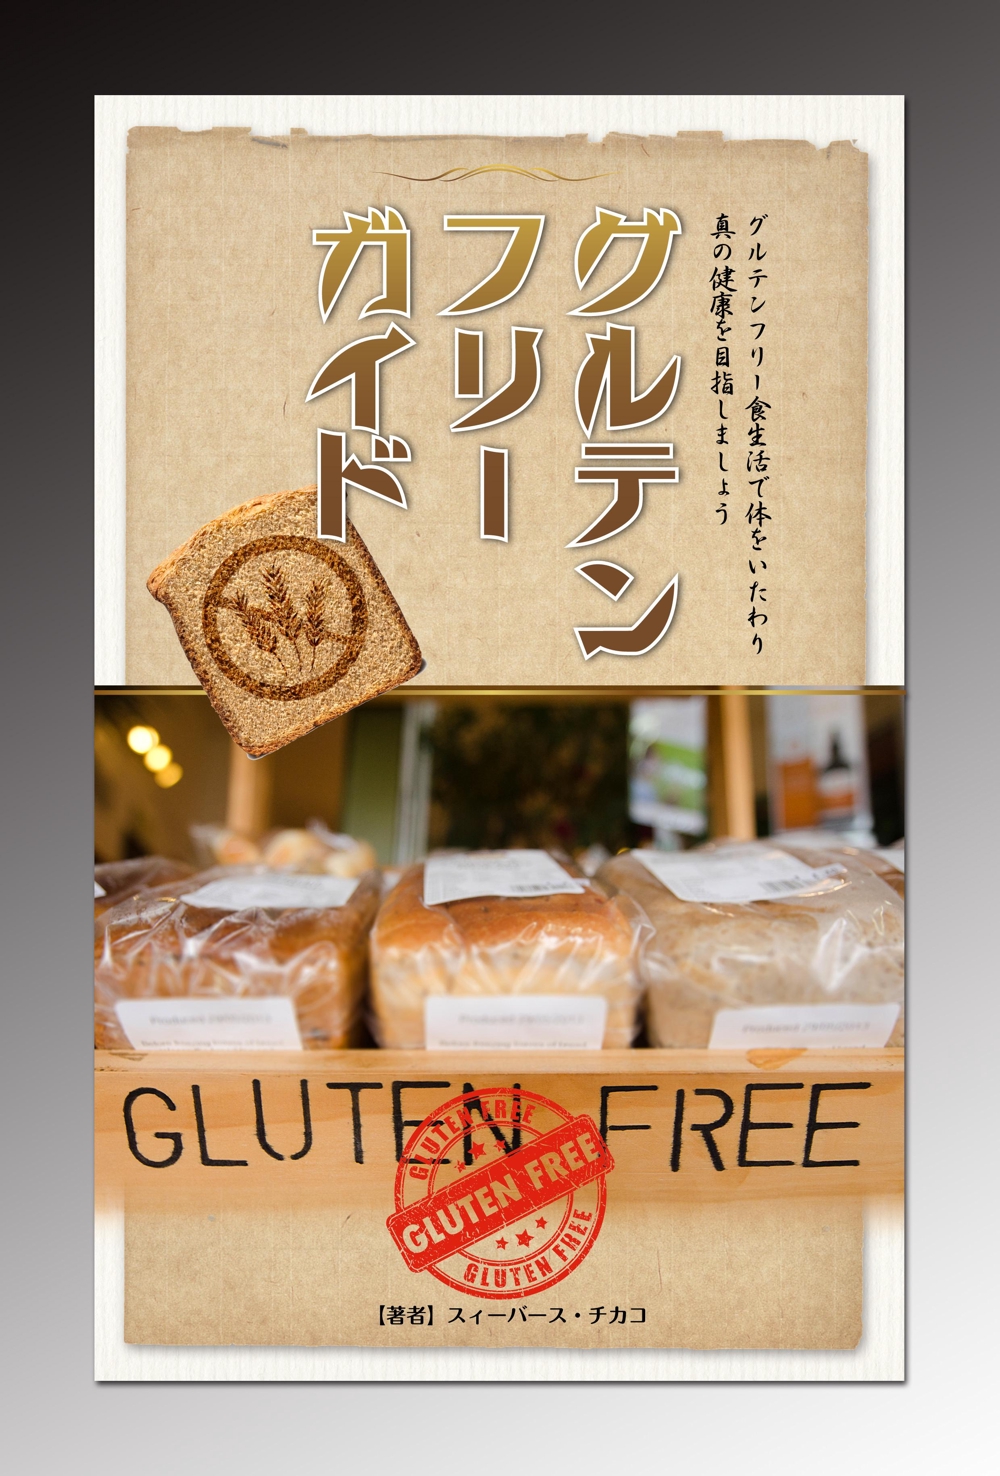 glutenfree.a.jpg